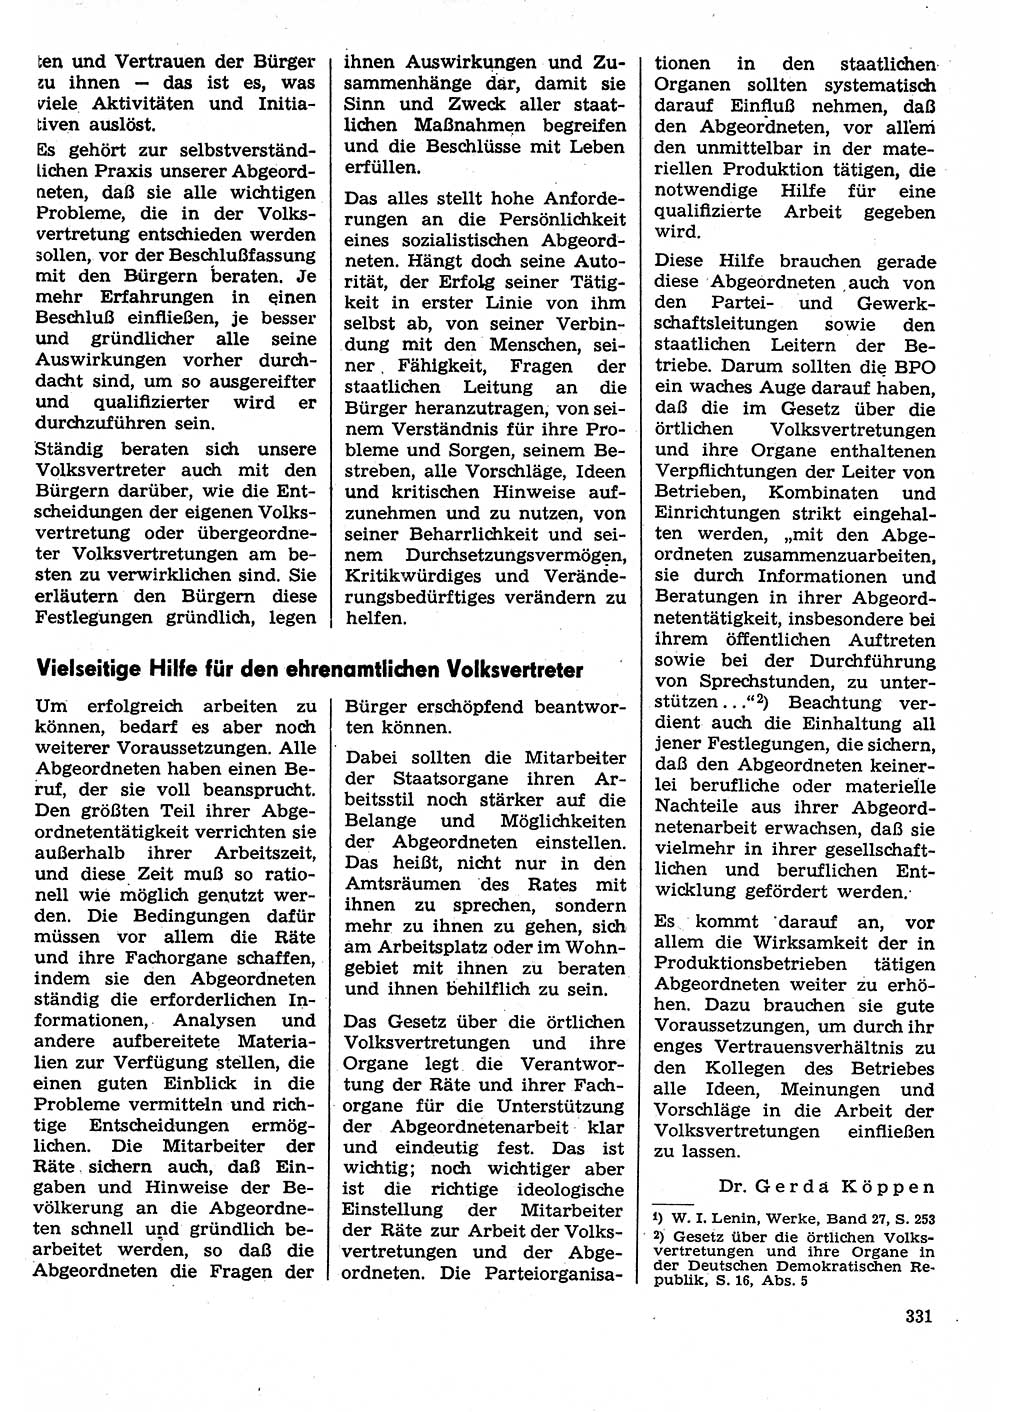 Neuer Weg (NW), Organ des Zentralkomitees (ZK) der SED (Sozialistische Einheitspartei Deutschlands) für Fragen des Parteilebens, 29. Jahrgang [Deutsche Demokratische Republik (DDR)] 1974, Seite 331 (NW ZK SED DDR 1974, S. 331)